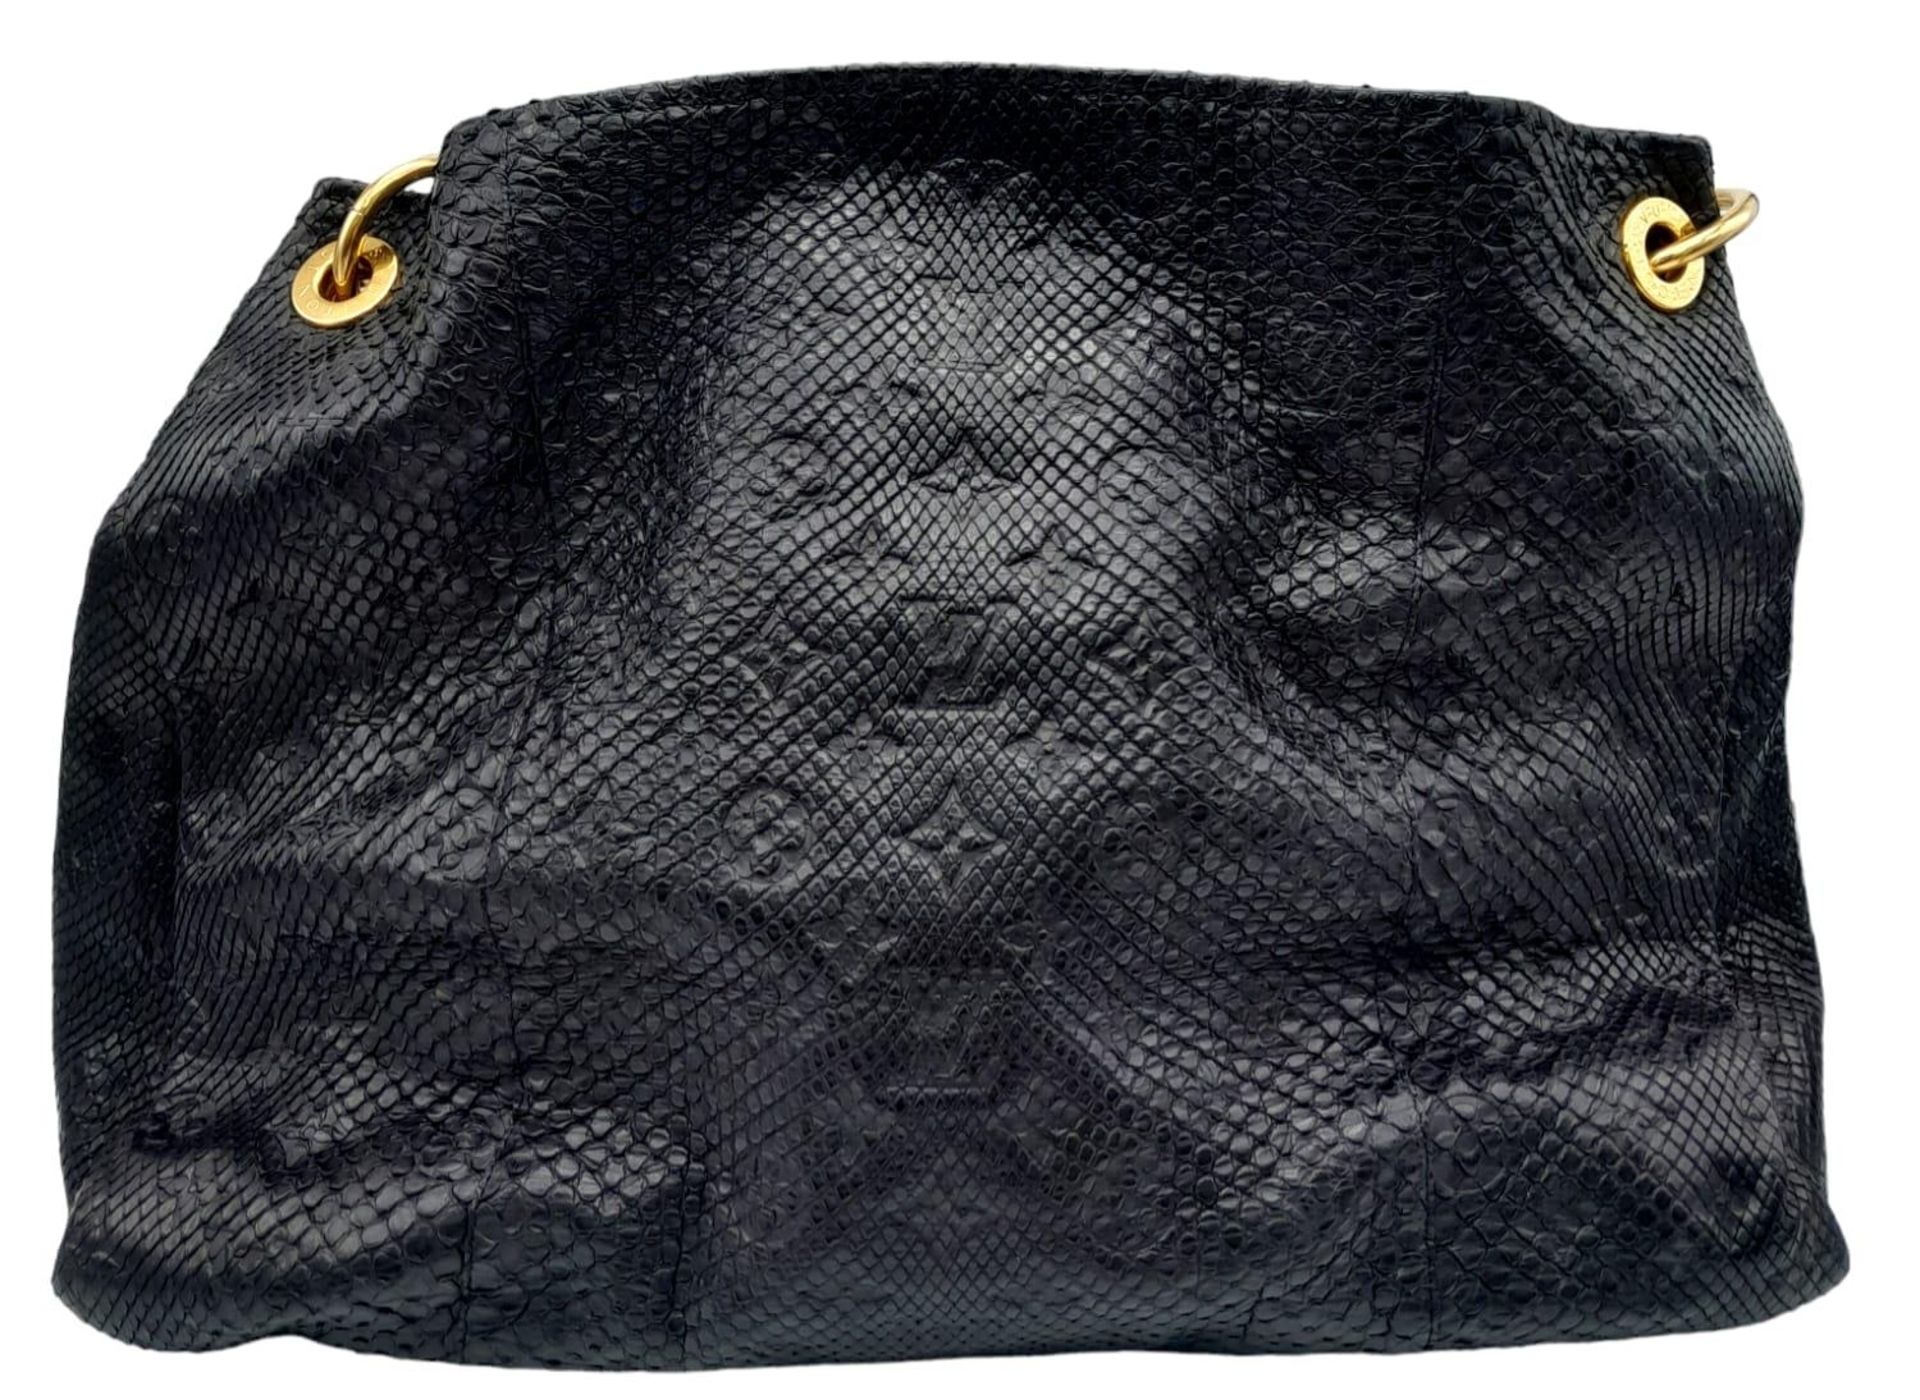 A Louis Vuitton Monogram Black Snakeskin Tote Bag. Gold tone hardware. Spacious black leather - Bild 2 aus 8